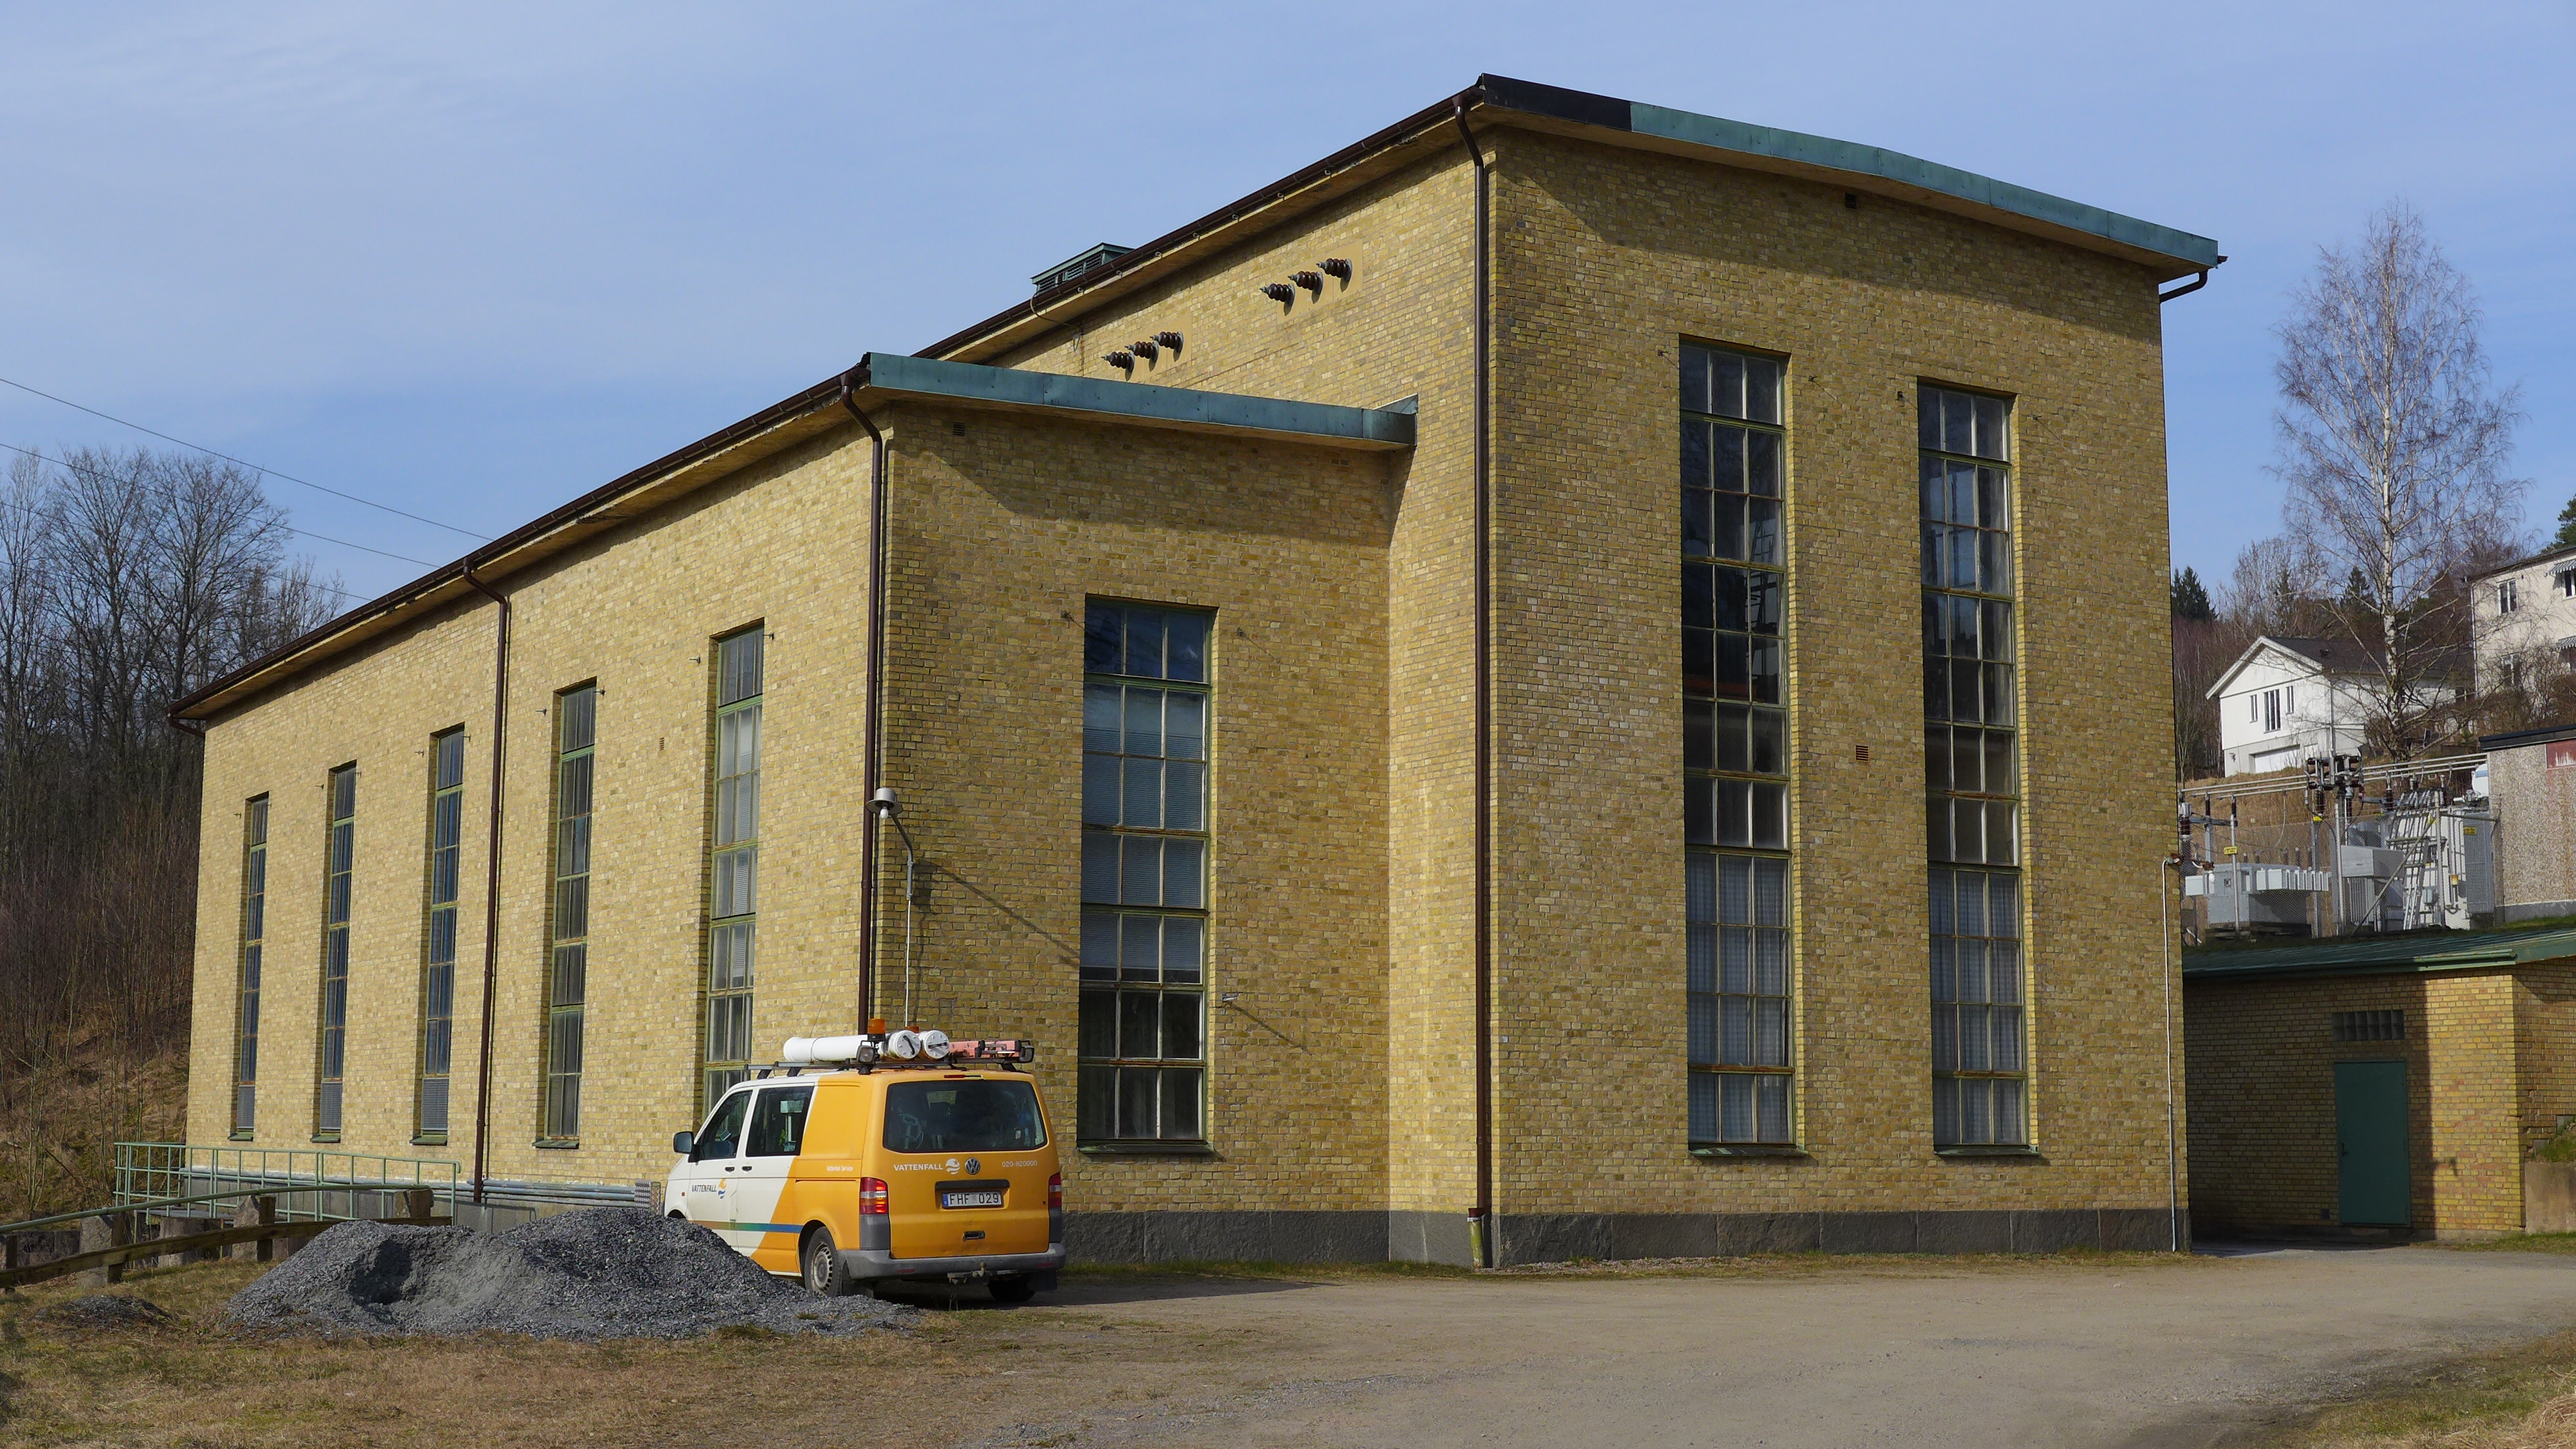 Kinna kraftverk är uppfört 1937-1939 längs Viskan inne i Kinna samhälle. Byggnaden har en tidstypisk modernistisk utformning.
